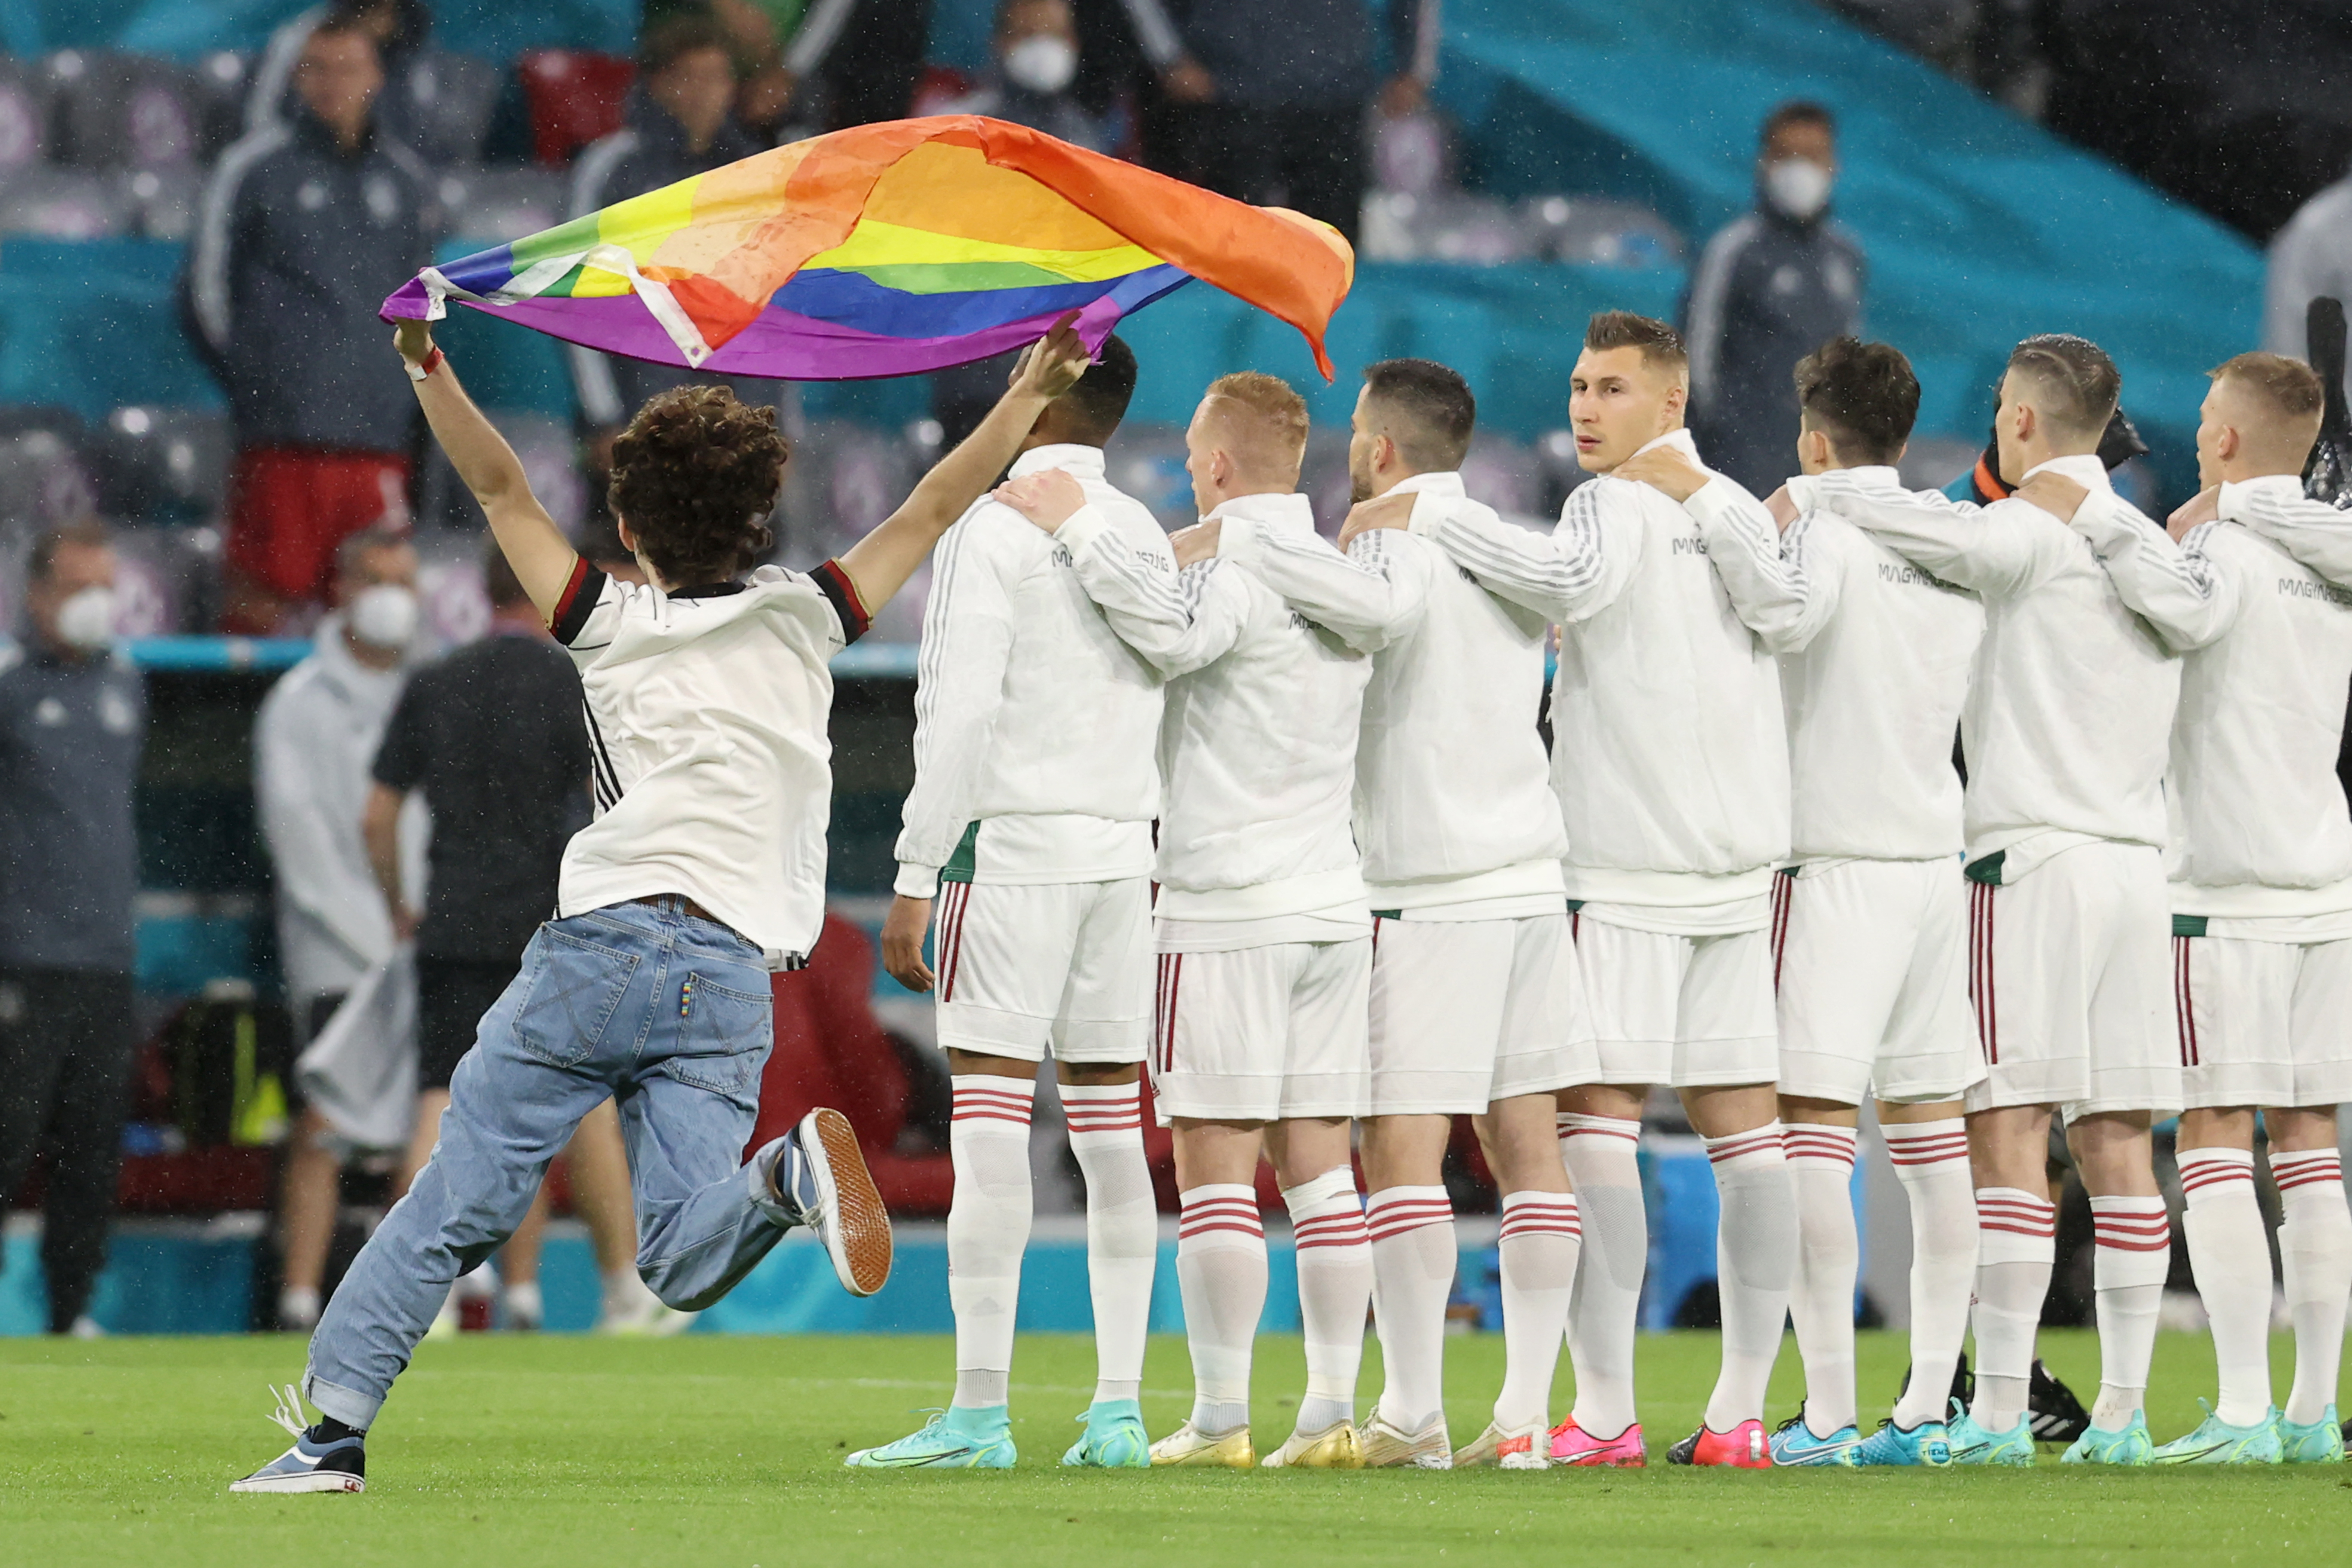 Pride-zászlós német szurkoló rohan be a pályára a Himnusz alatt a müncheni Allianz Arenában a Németország-Magyarország foci-Eb-mérkőzés előtt 2021. június 23-án.